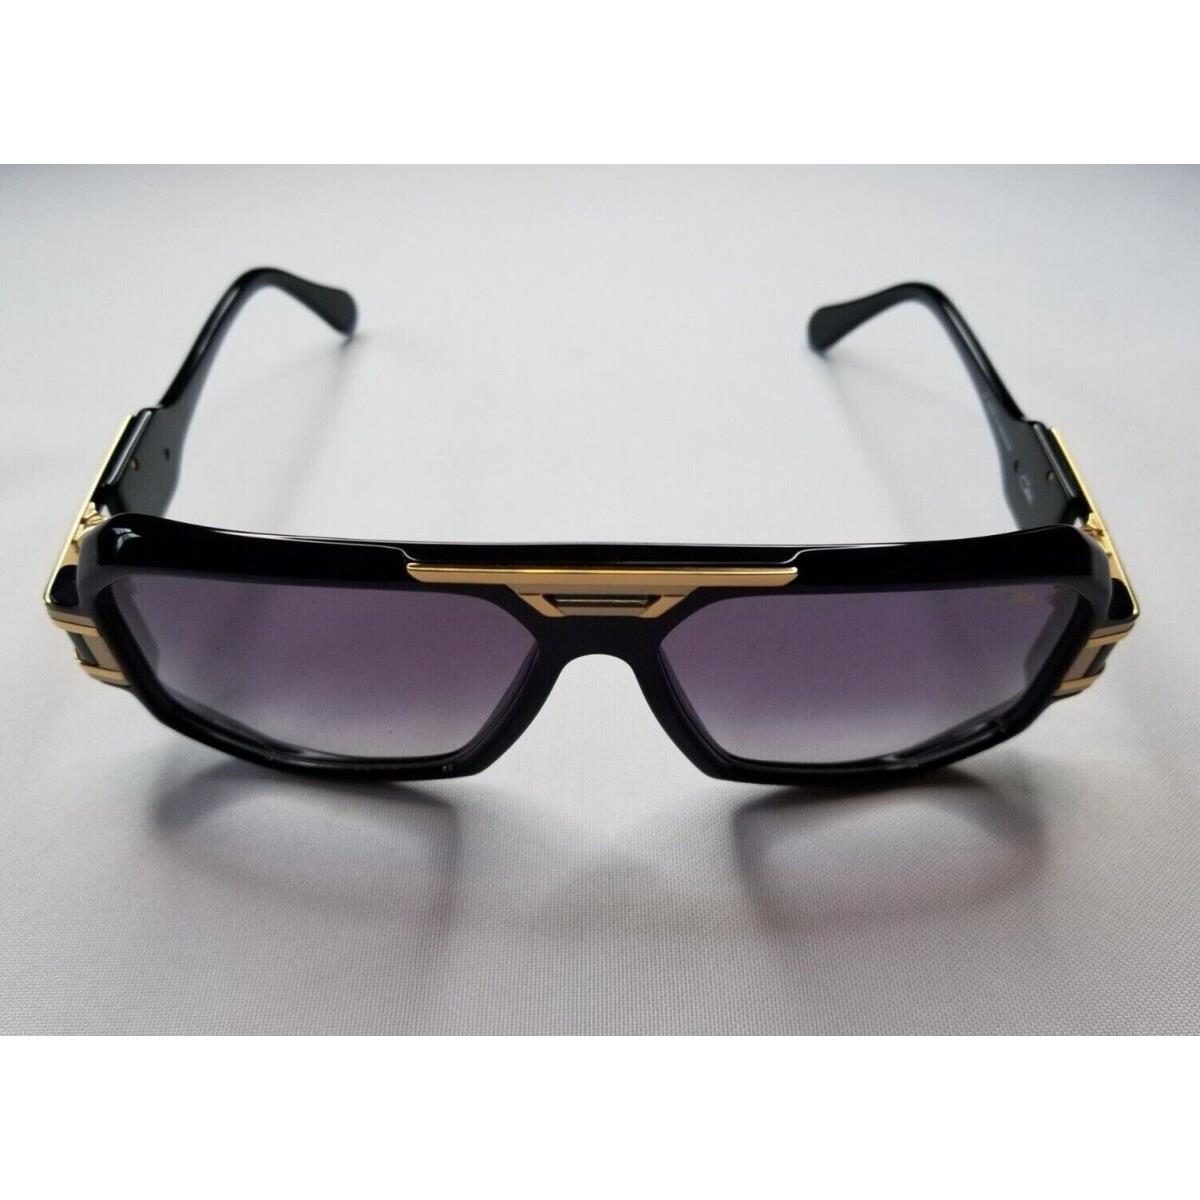 Cazal sunglasses  - Frame: Black/Gold, Lens: Gray 2